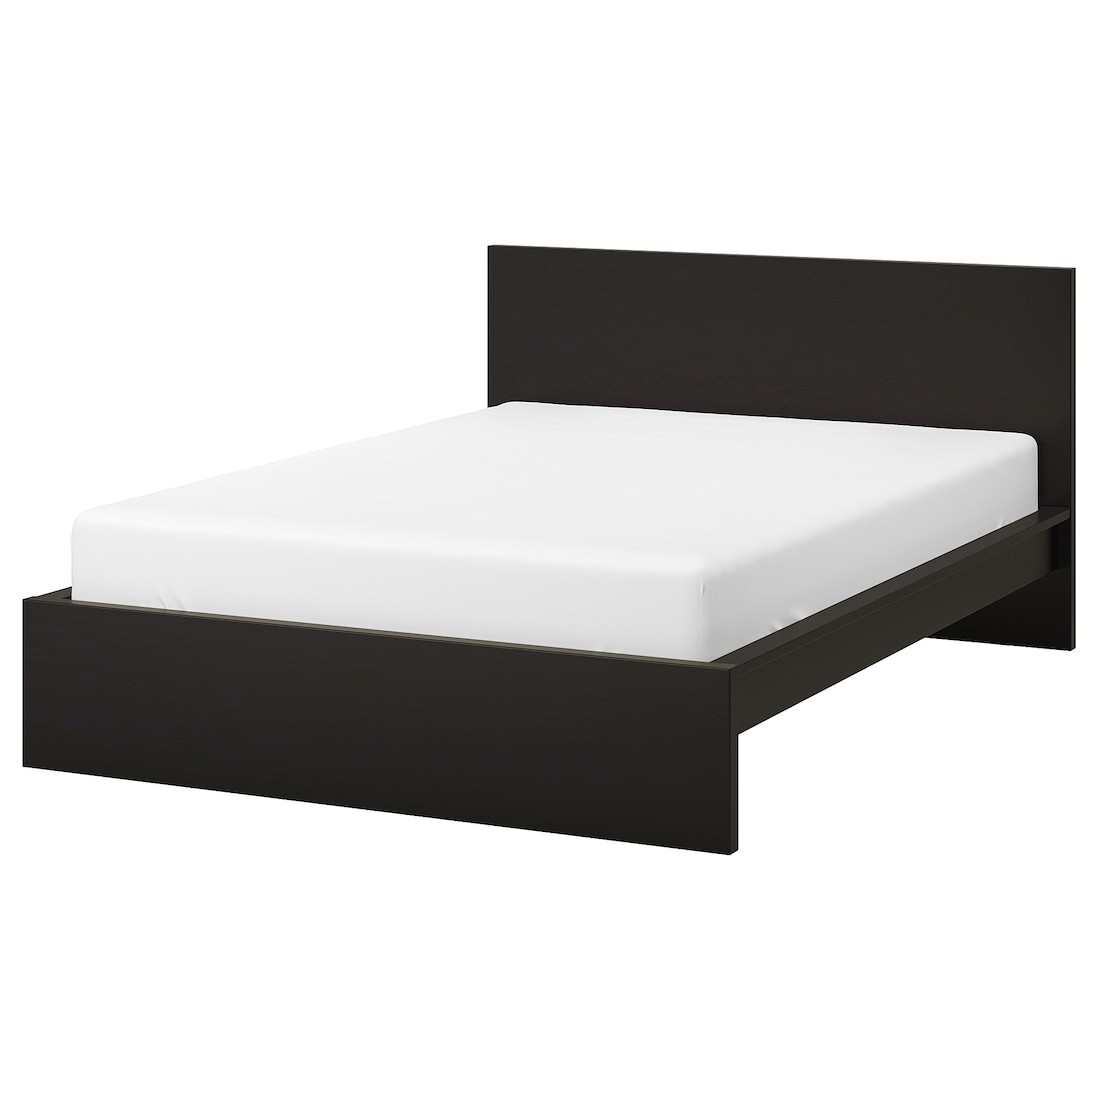 IKEA MALM МАЛЬМ Кровать двуспальная, высокий, черно-коричневый, 140x200 см 80249469 802.494.69